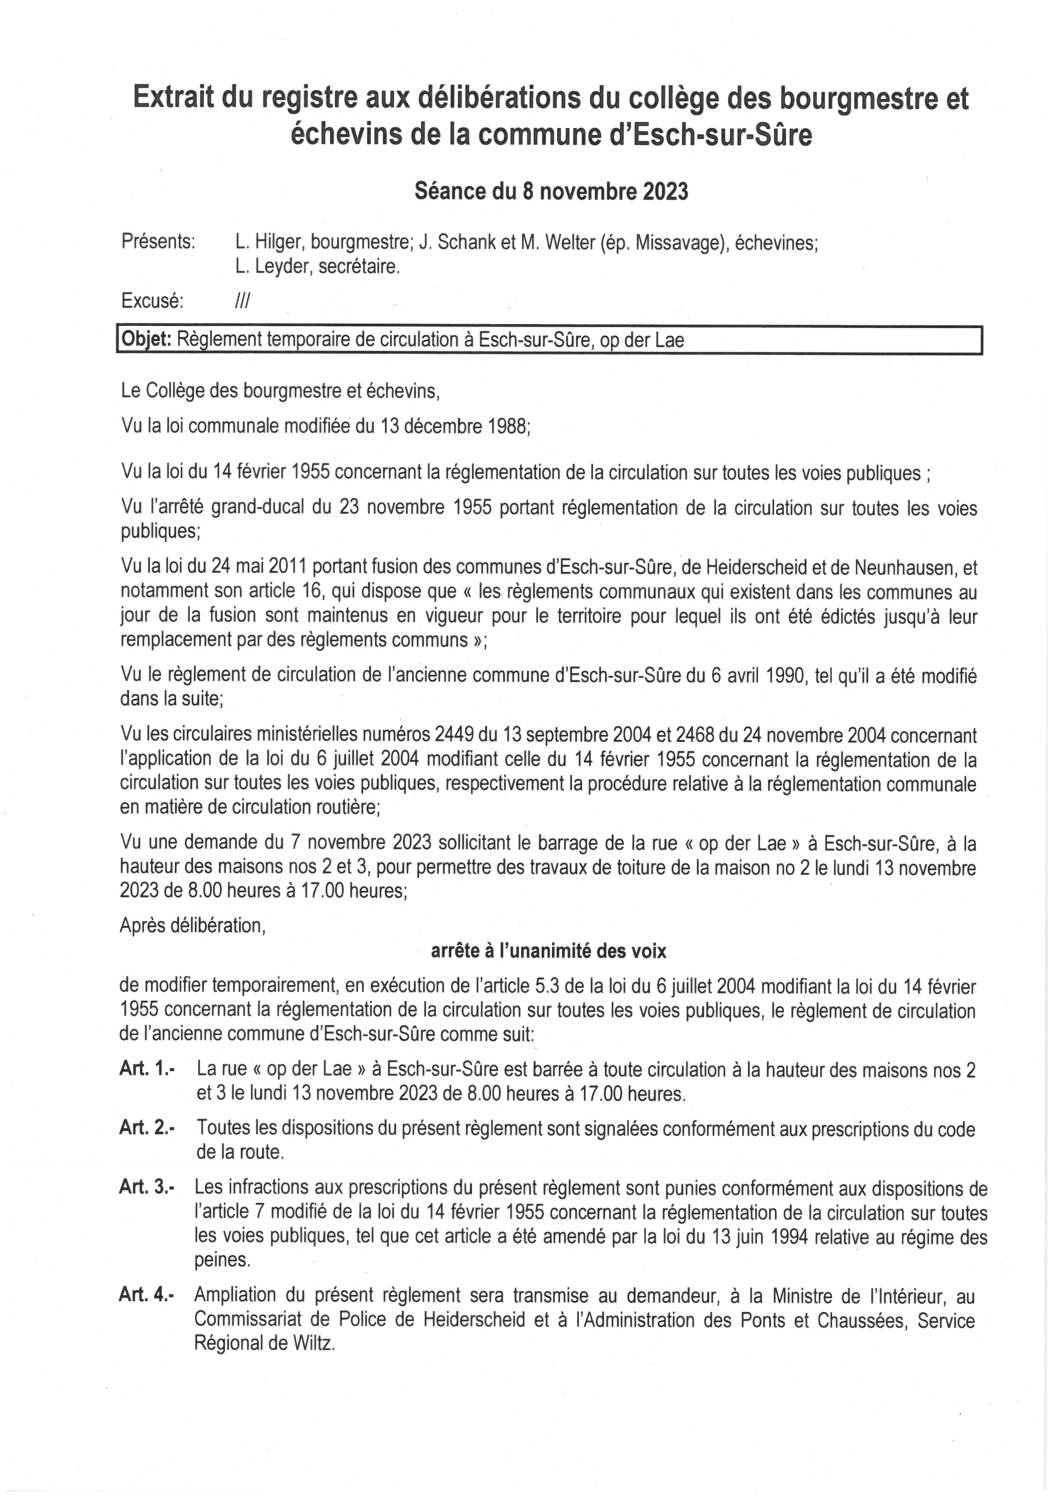 2023.11.10_Règlement temporaire de circulation à Esch-sur-Sûre (op der Lae) le 13.11.2023